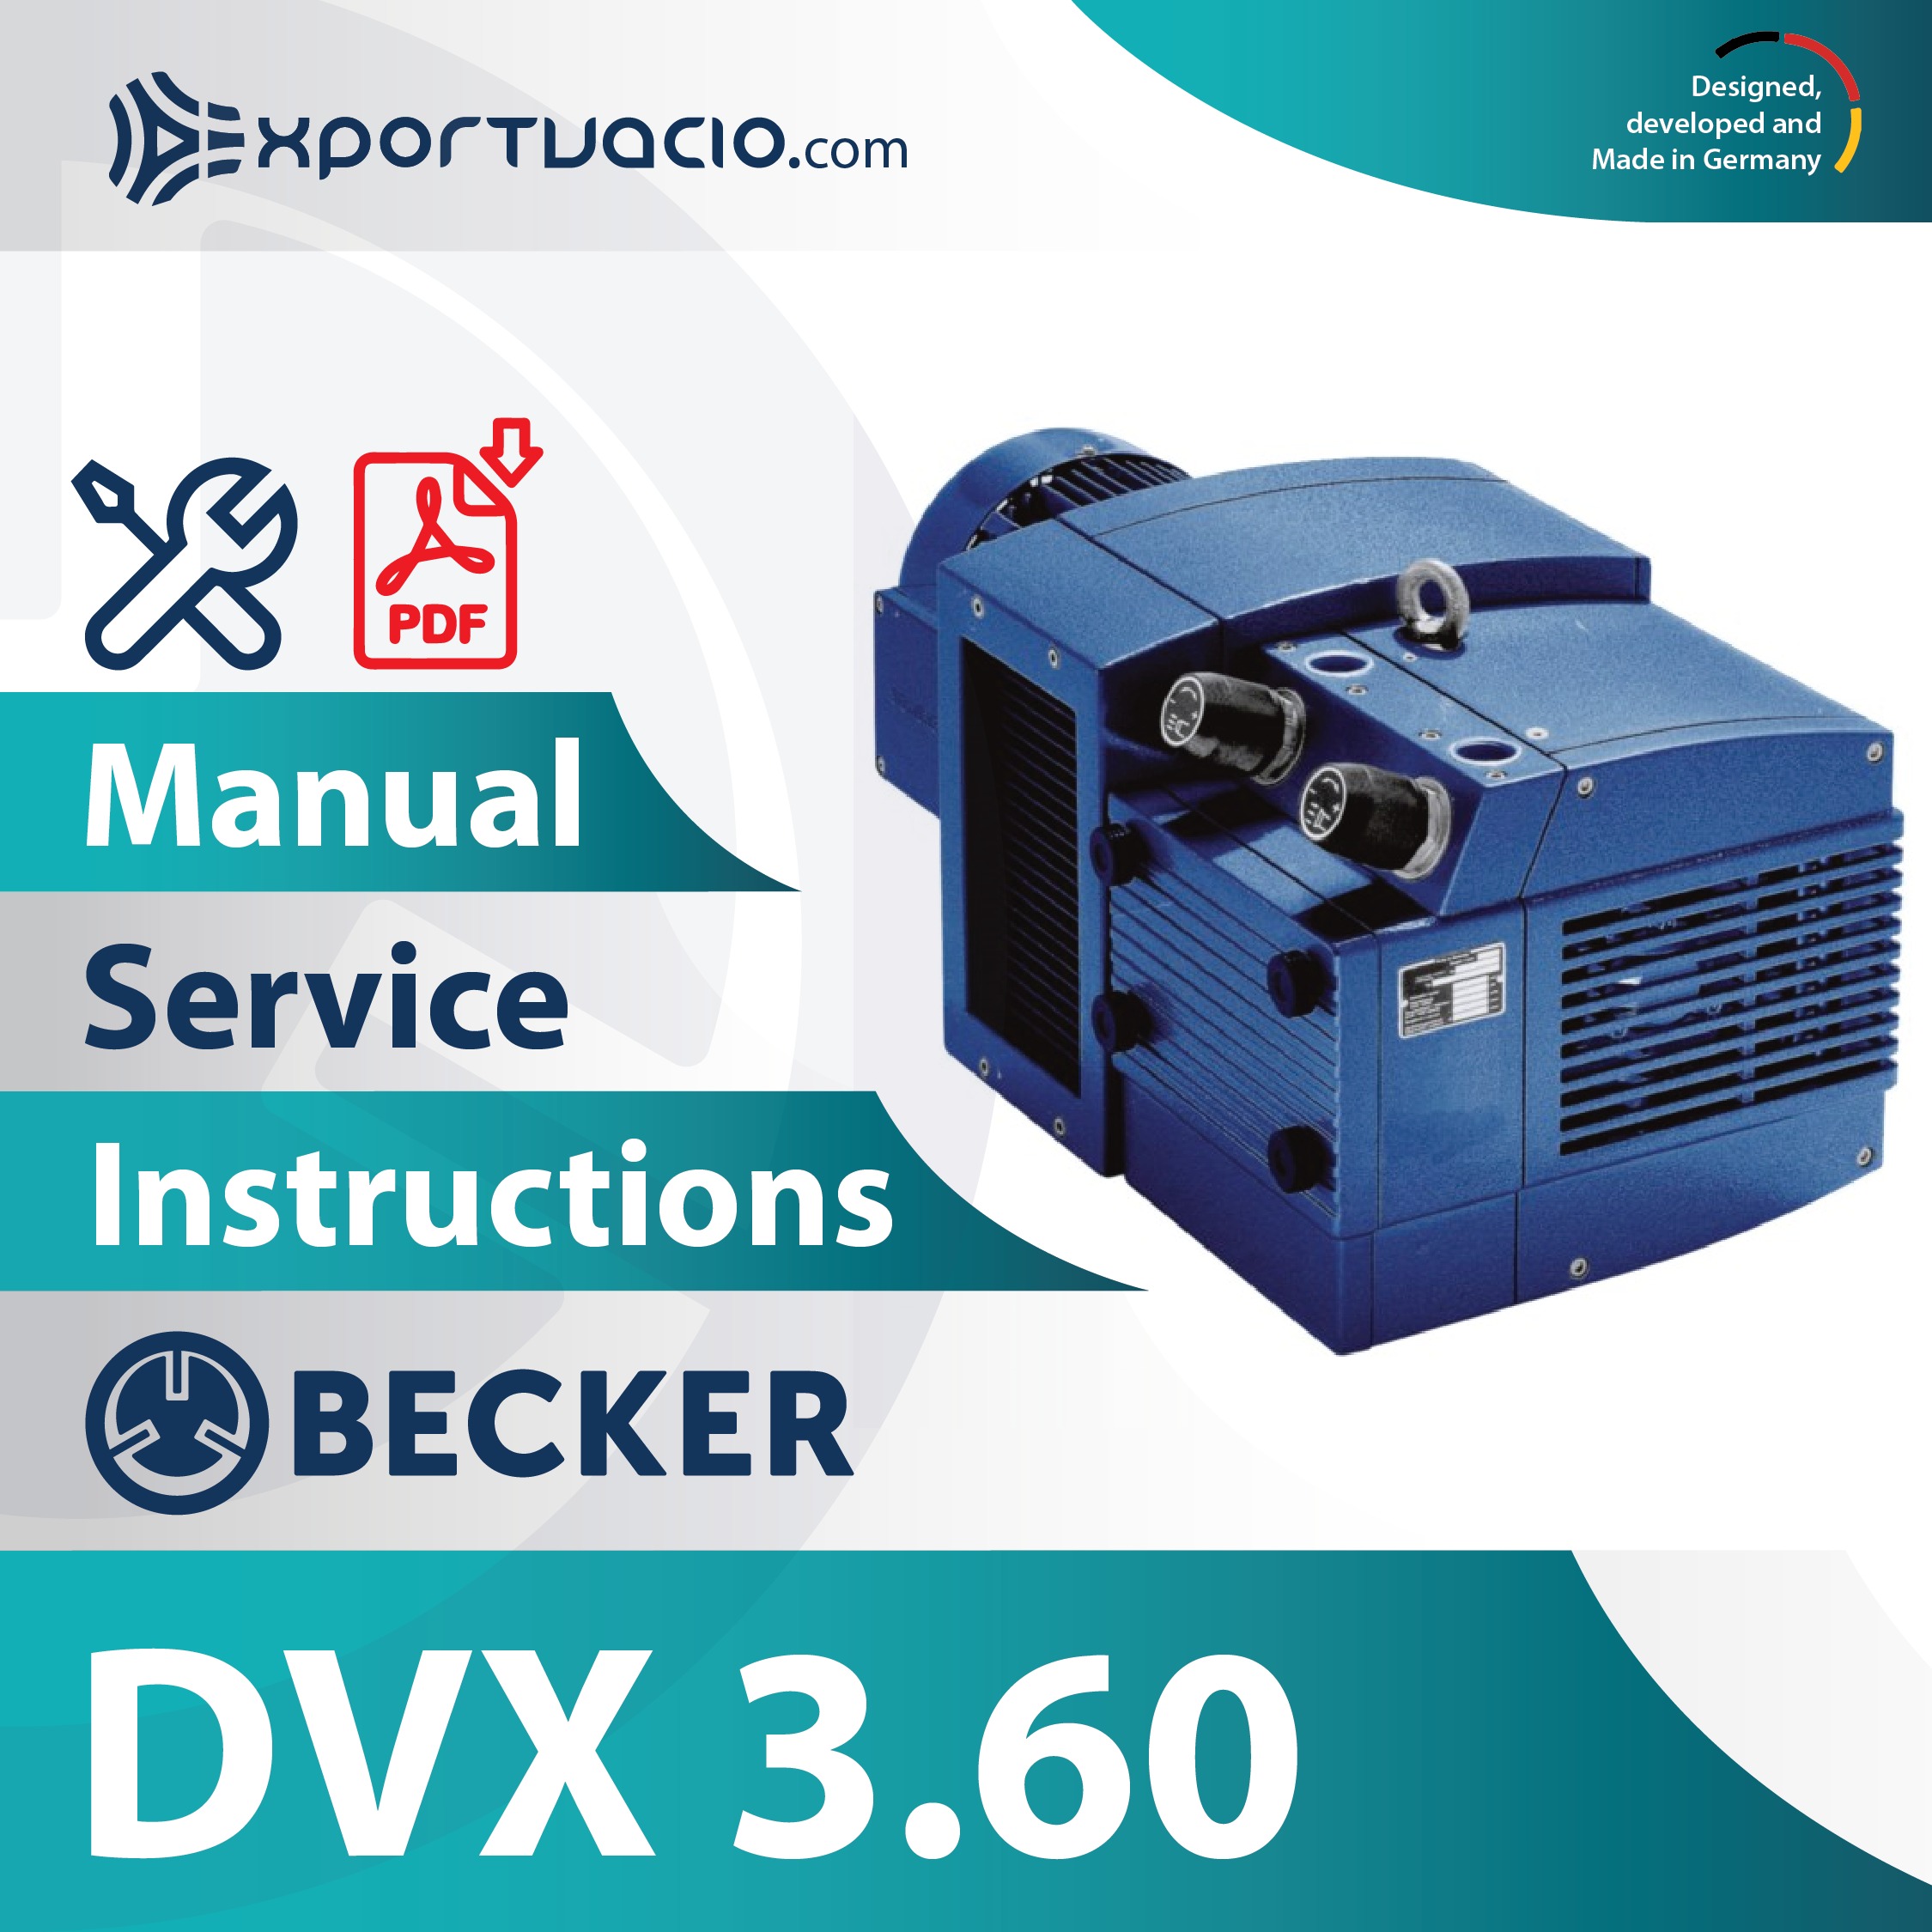 Becker DVX 3.60